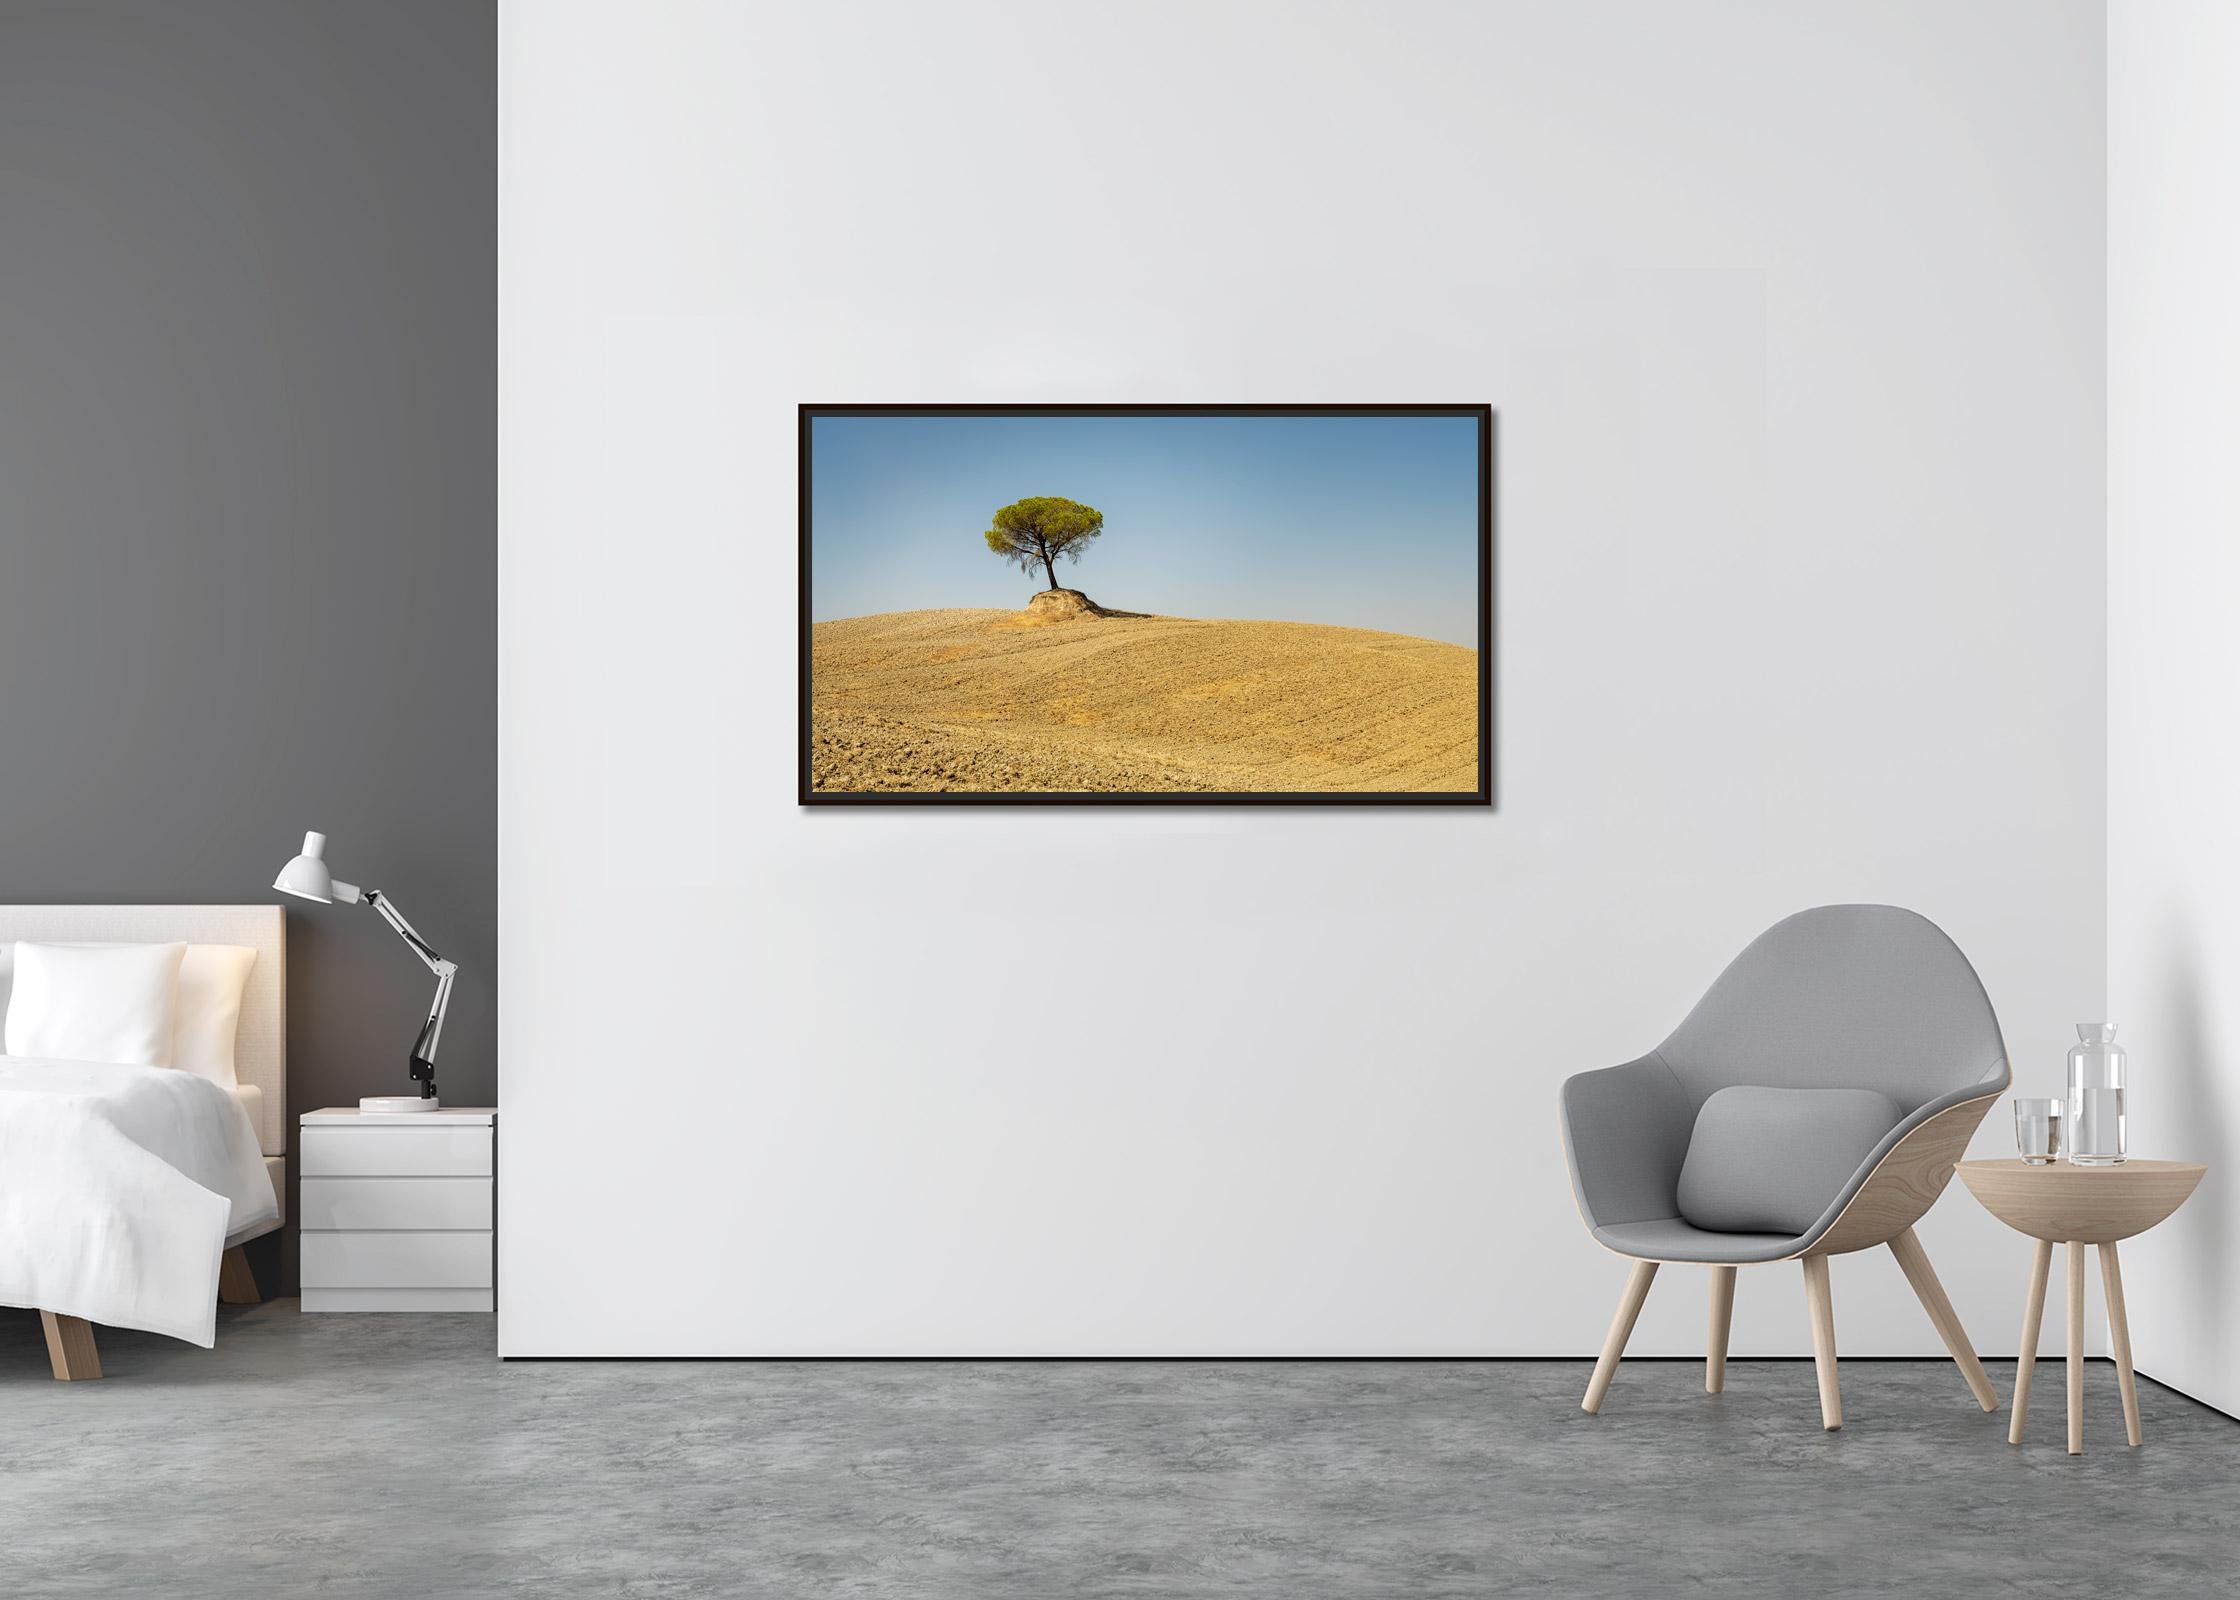 Pines de pierre italiens, arbre, Toscane, Italie, photographie d'art en couleur, paysage - Contemporain Photograph par Gerald Berghammer